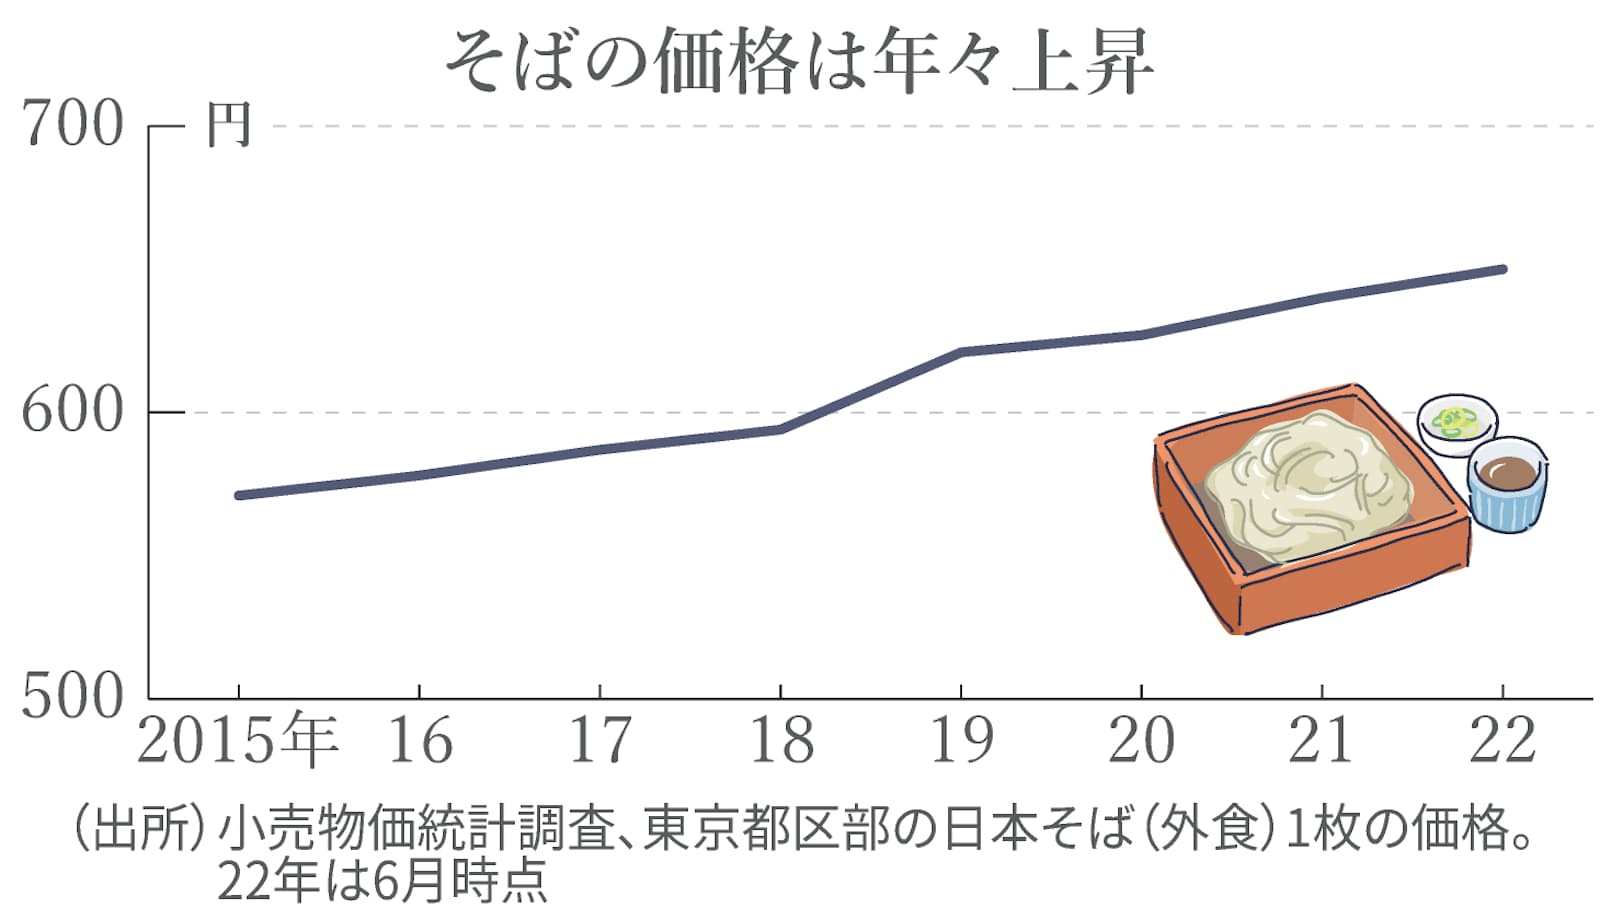 小売物価統計調査、東京都区部の日本そば（外食）1枚の価格を示した折れ線グラフ。2015年に571円だったそばの価格は22年6月には650円と、年々上昇している。